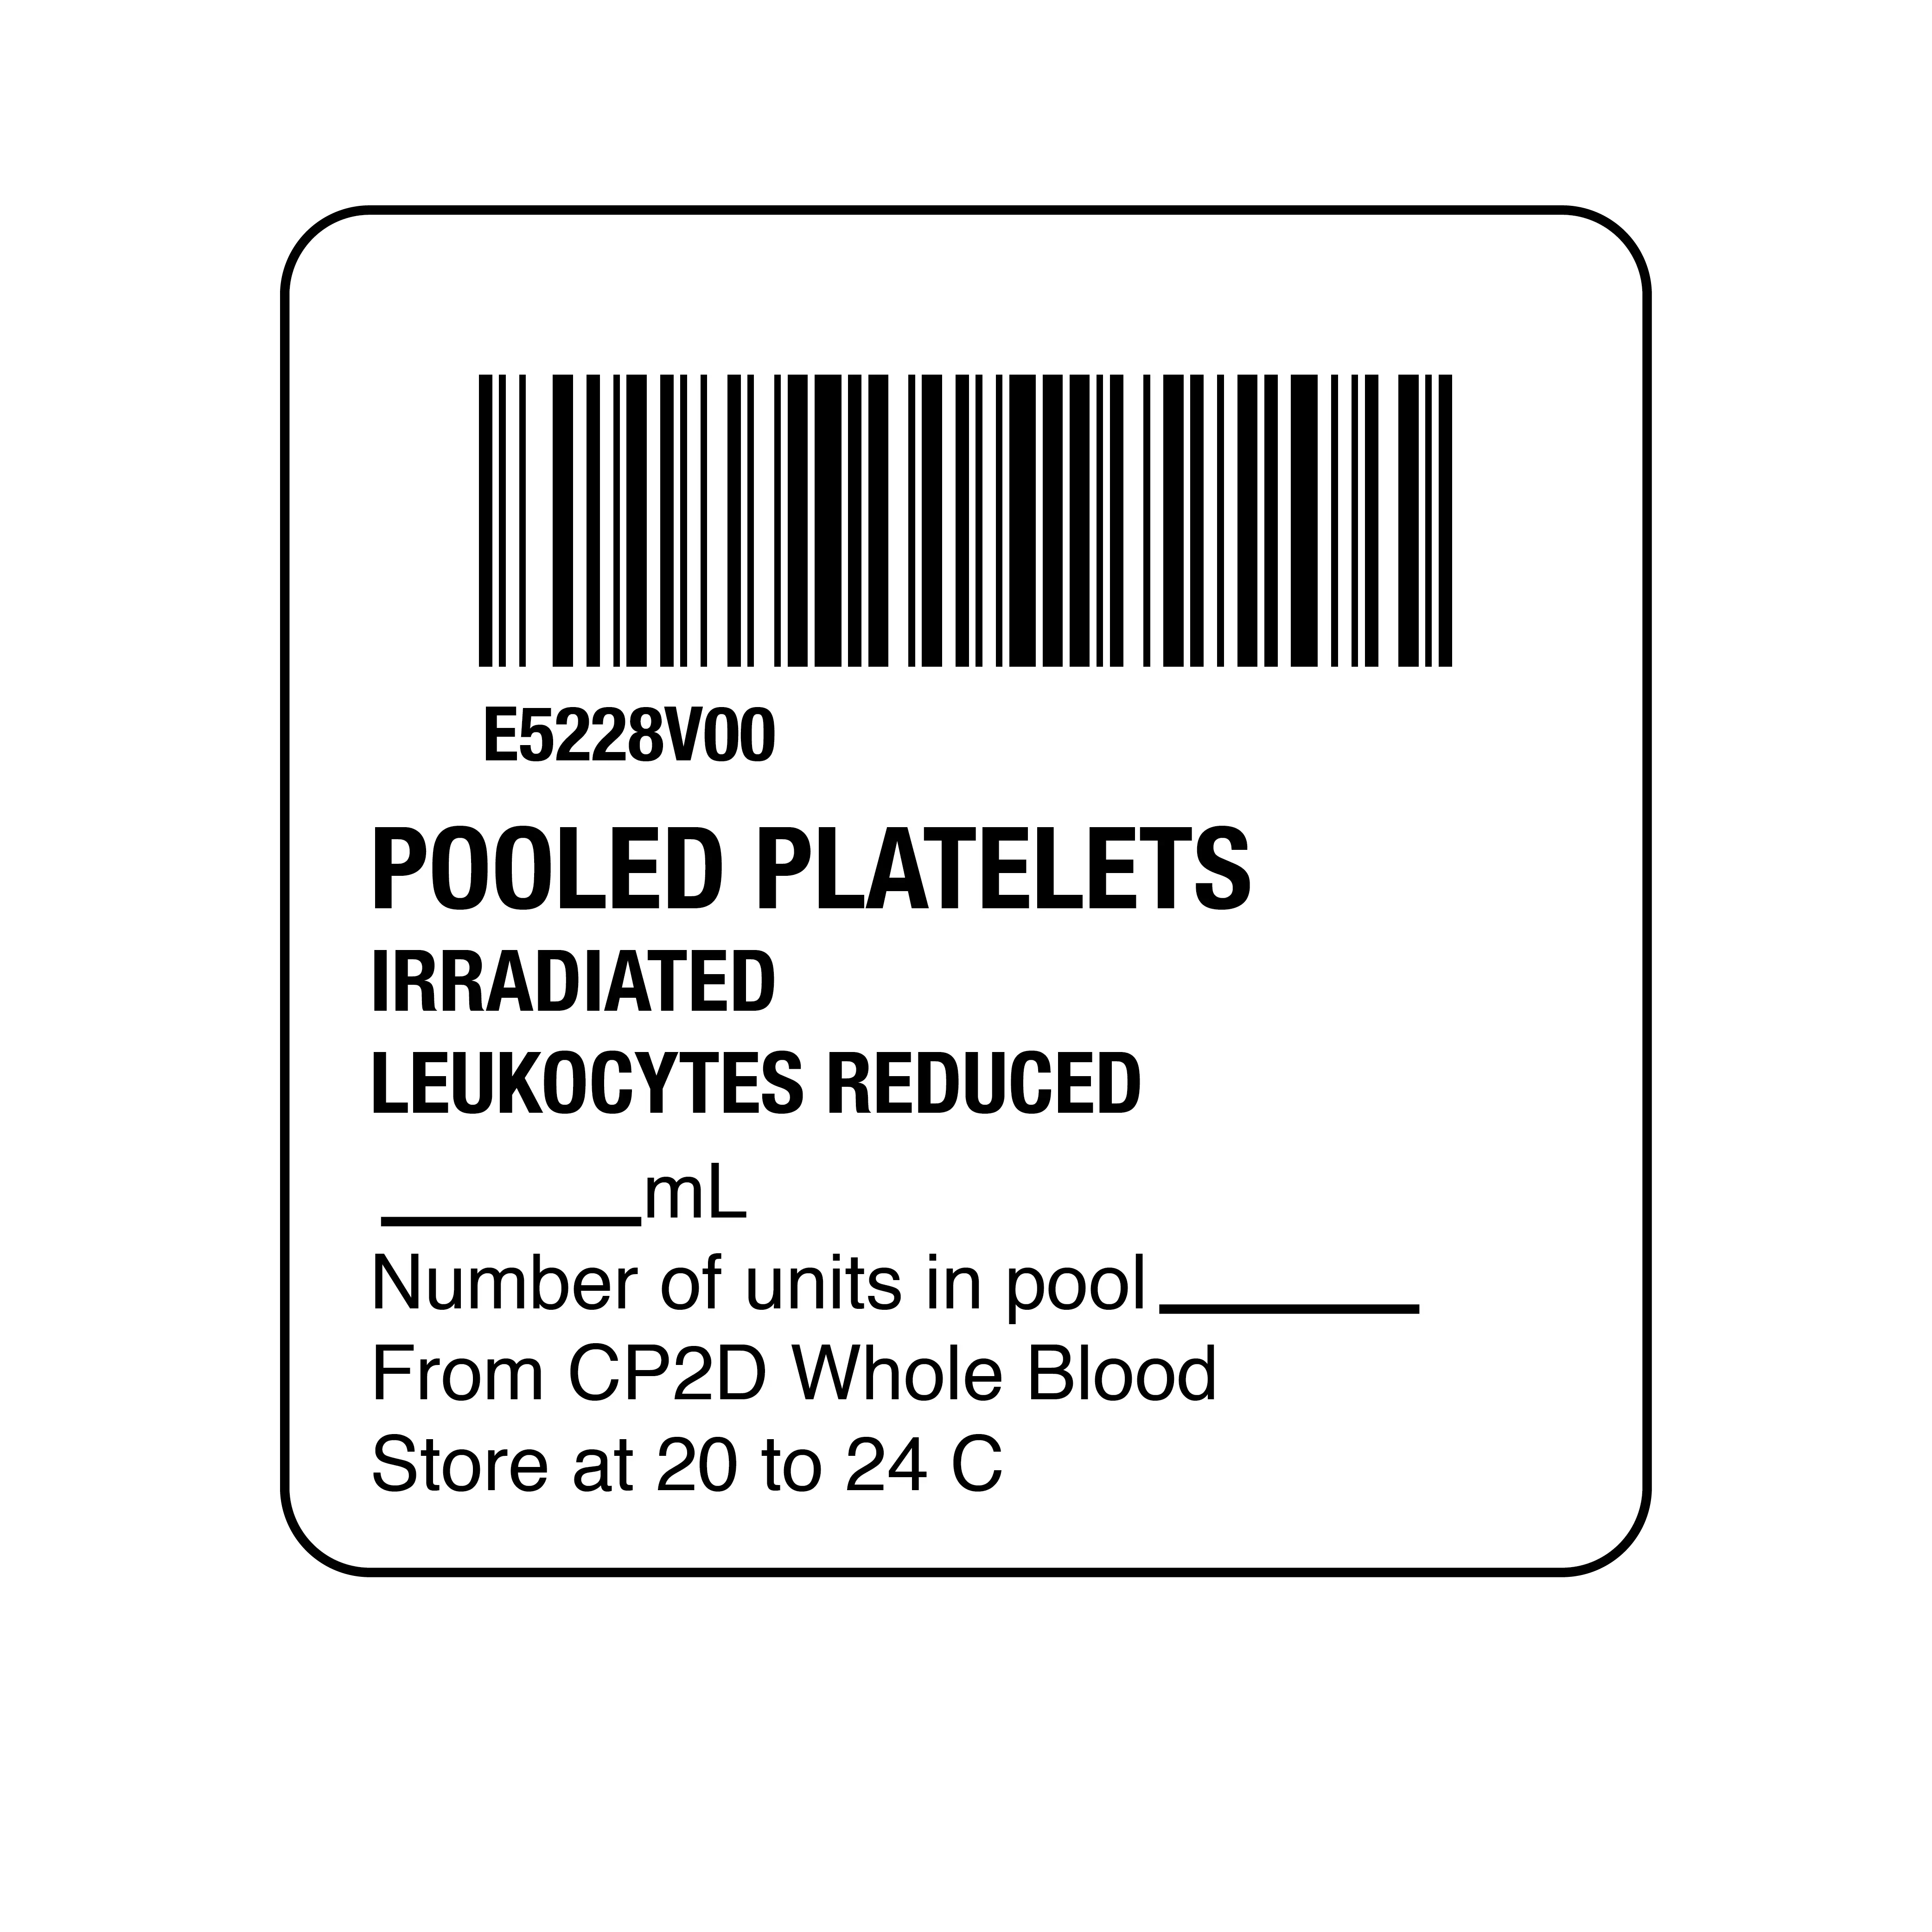 ISBT 128 Pooled Platelets Irradiated Leukocytes R